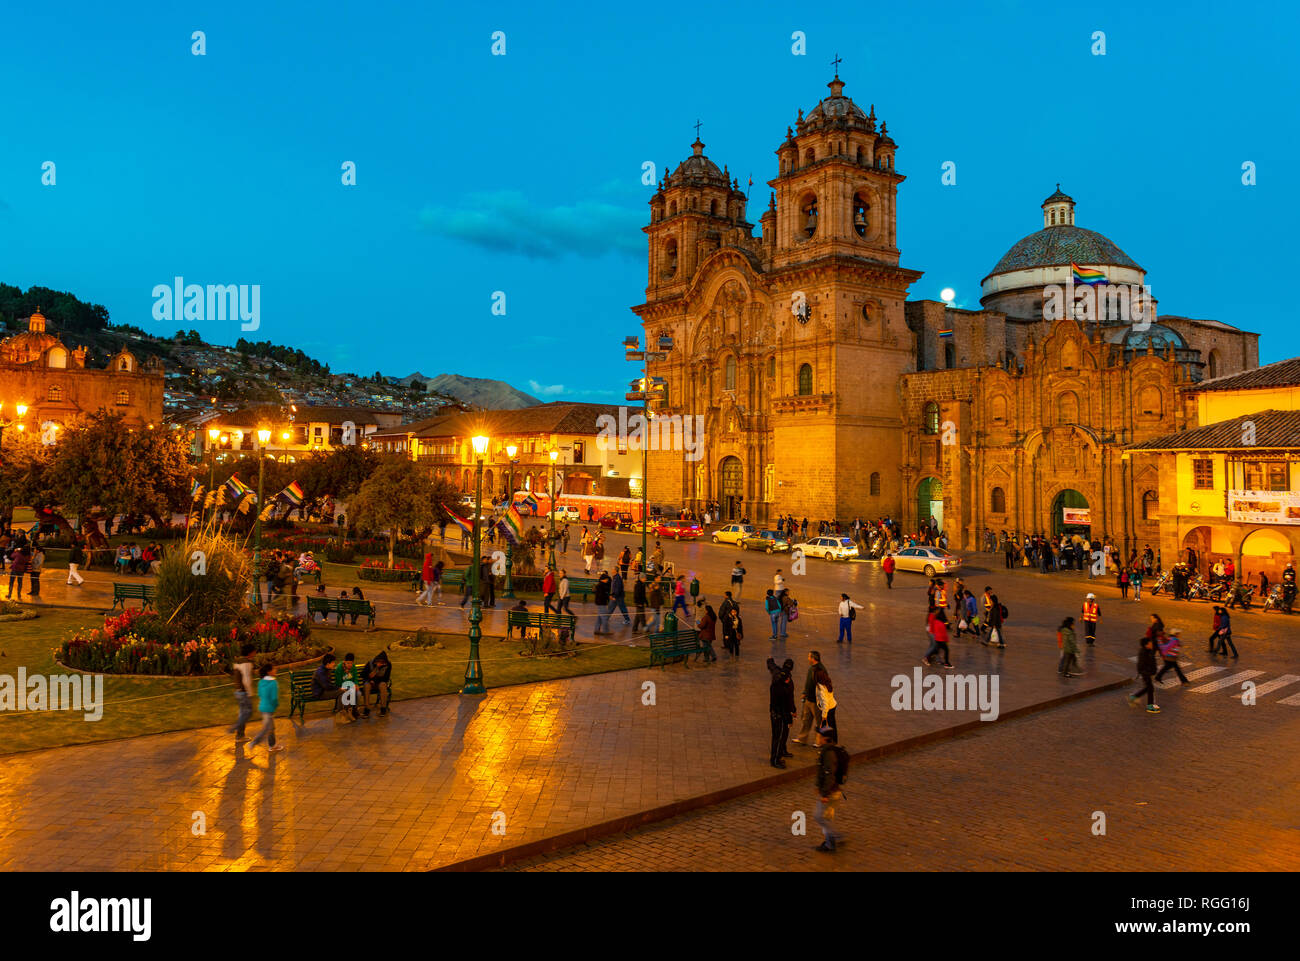 Großer Reichtum an der Plaza de Armas, dem Hauptplatz der Stadt Cusco mit ihrer Kathedrale nach Sonnenuntergang während der blauen Stunde und Unschärfe Bewegung von Menschen, Peru. Stockfoto